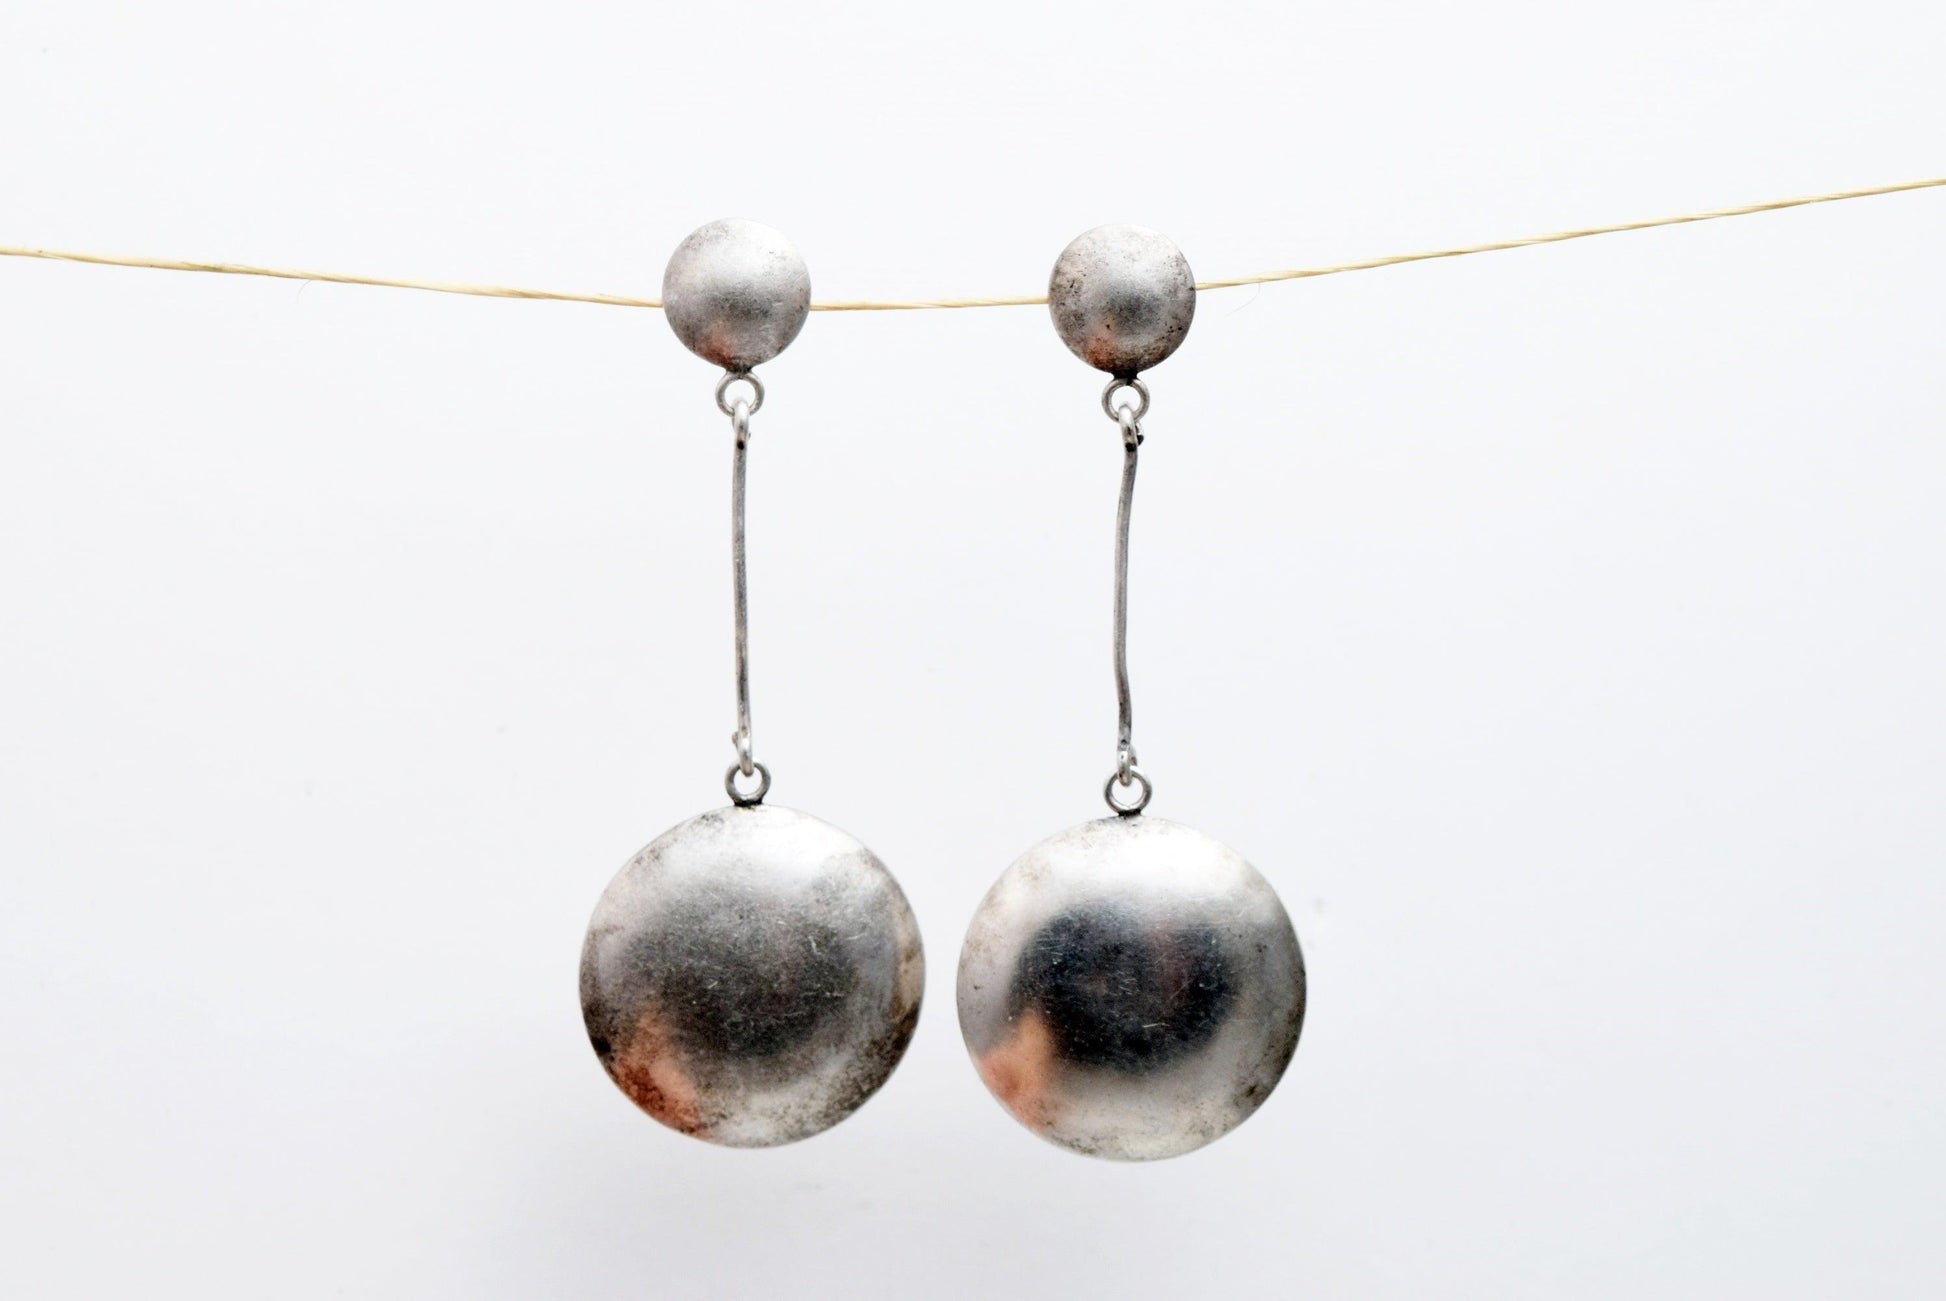 Vintage Sterling Silver Pendulum Earrings from Bali - Anteeka